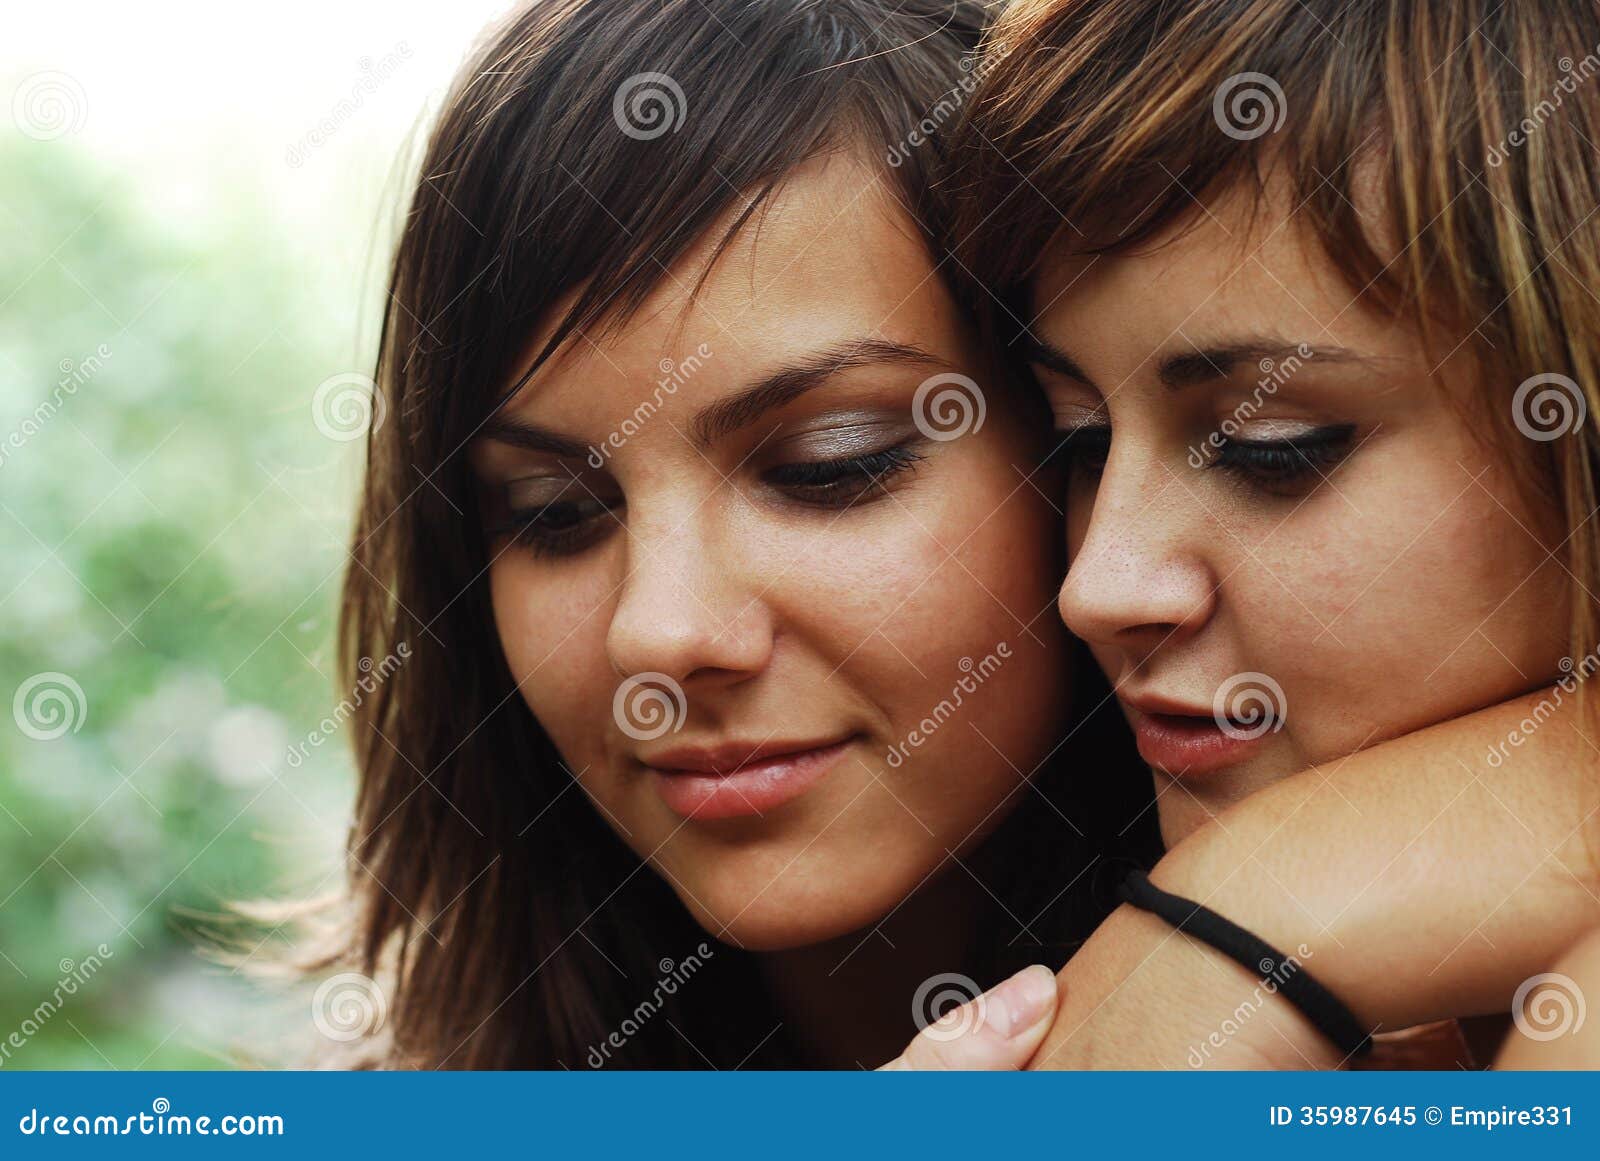 女同性恋的戏剧。爱爱抚的两个美丽的女孩 库存图片. 图片 包括有 关系, 裸体, 亲吻, 设计, 女性, 亲热 - 38814069